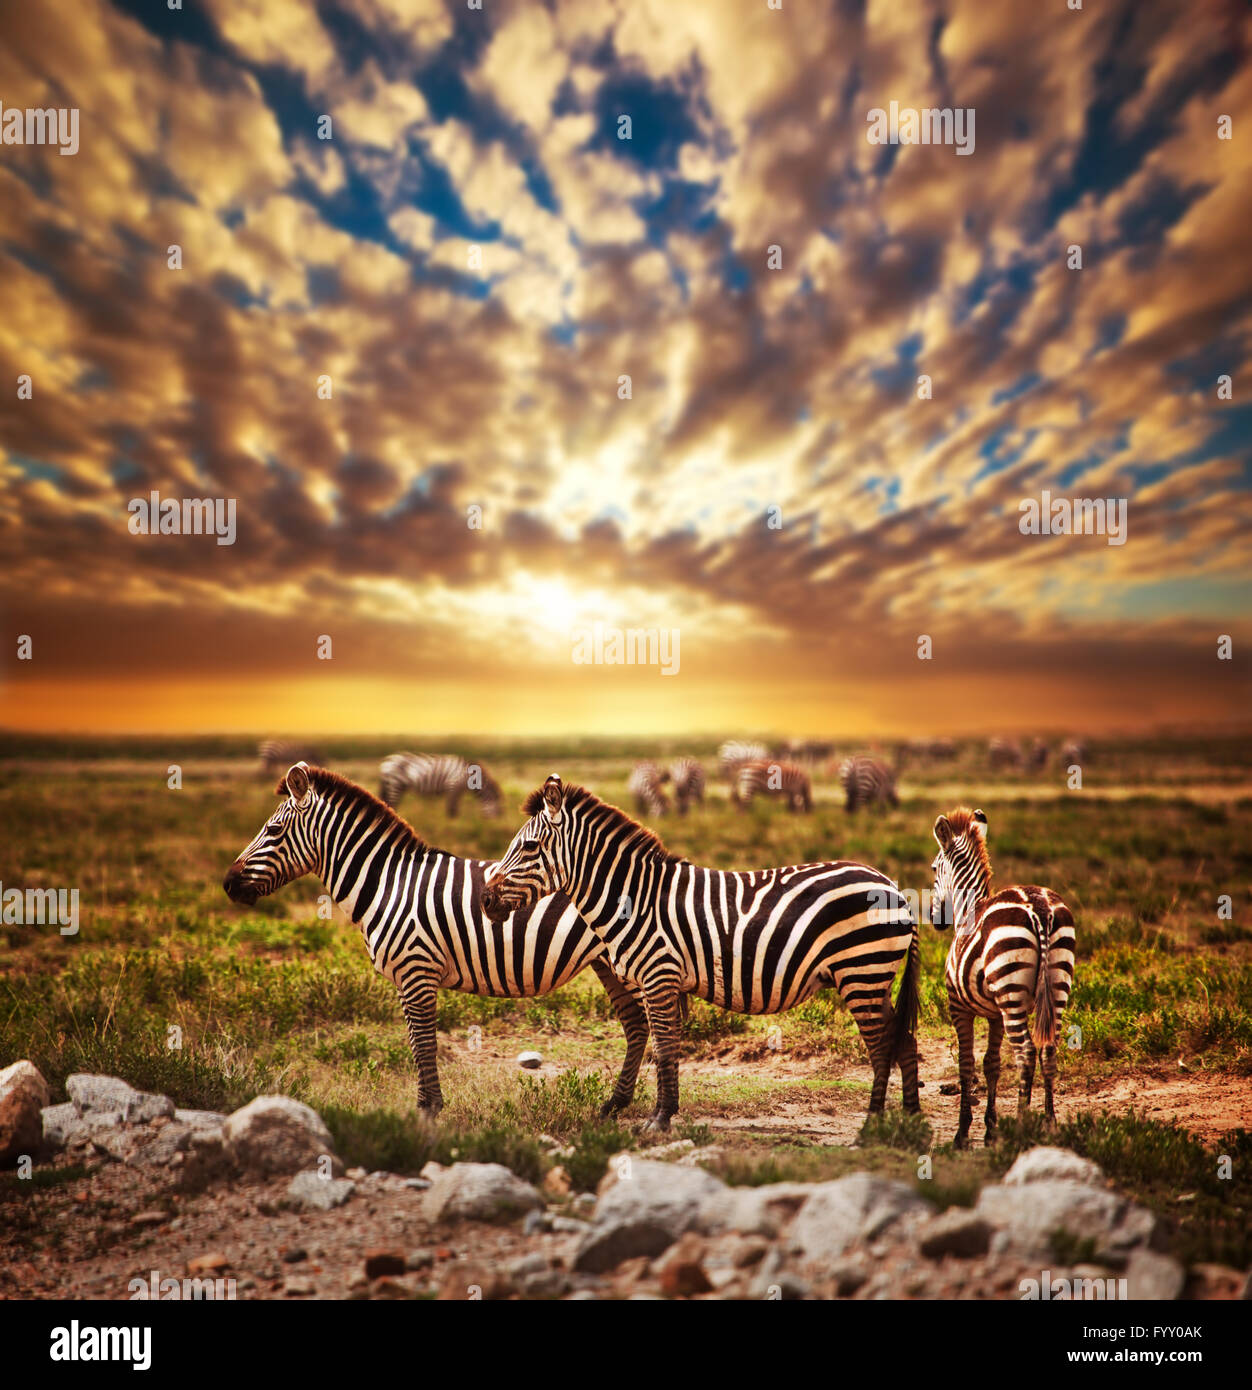 Zebras herd on African savanna at sunset. Stock Photo